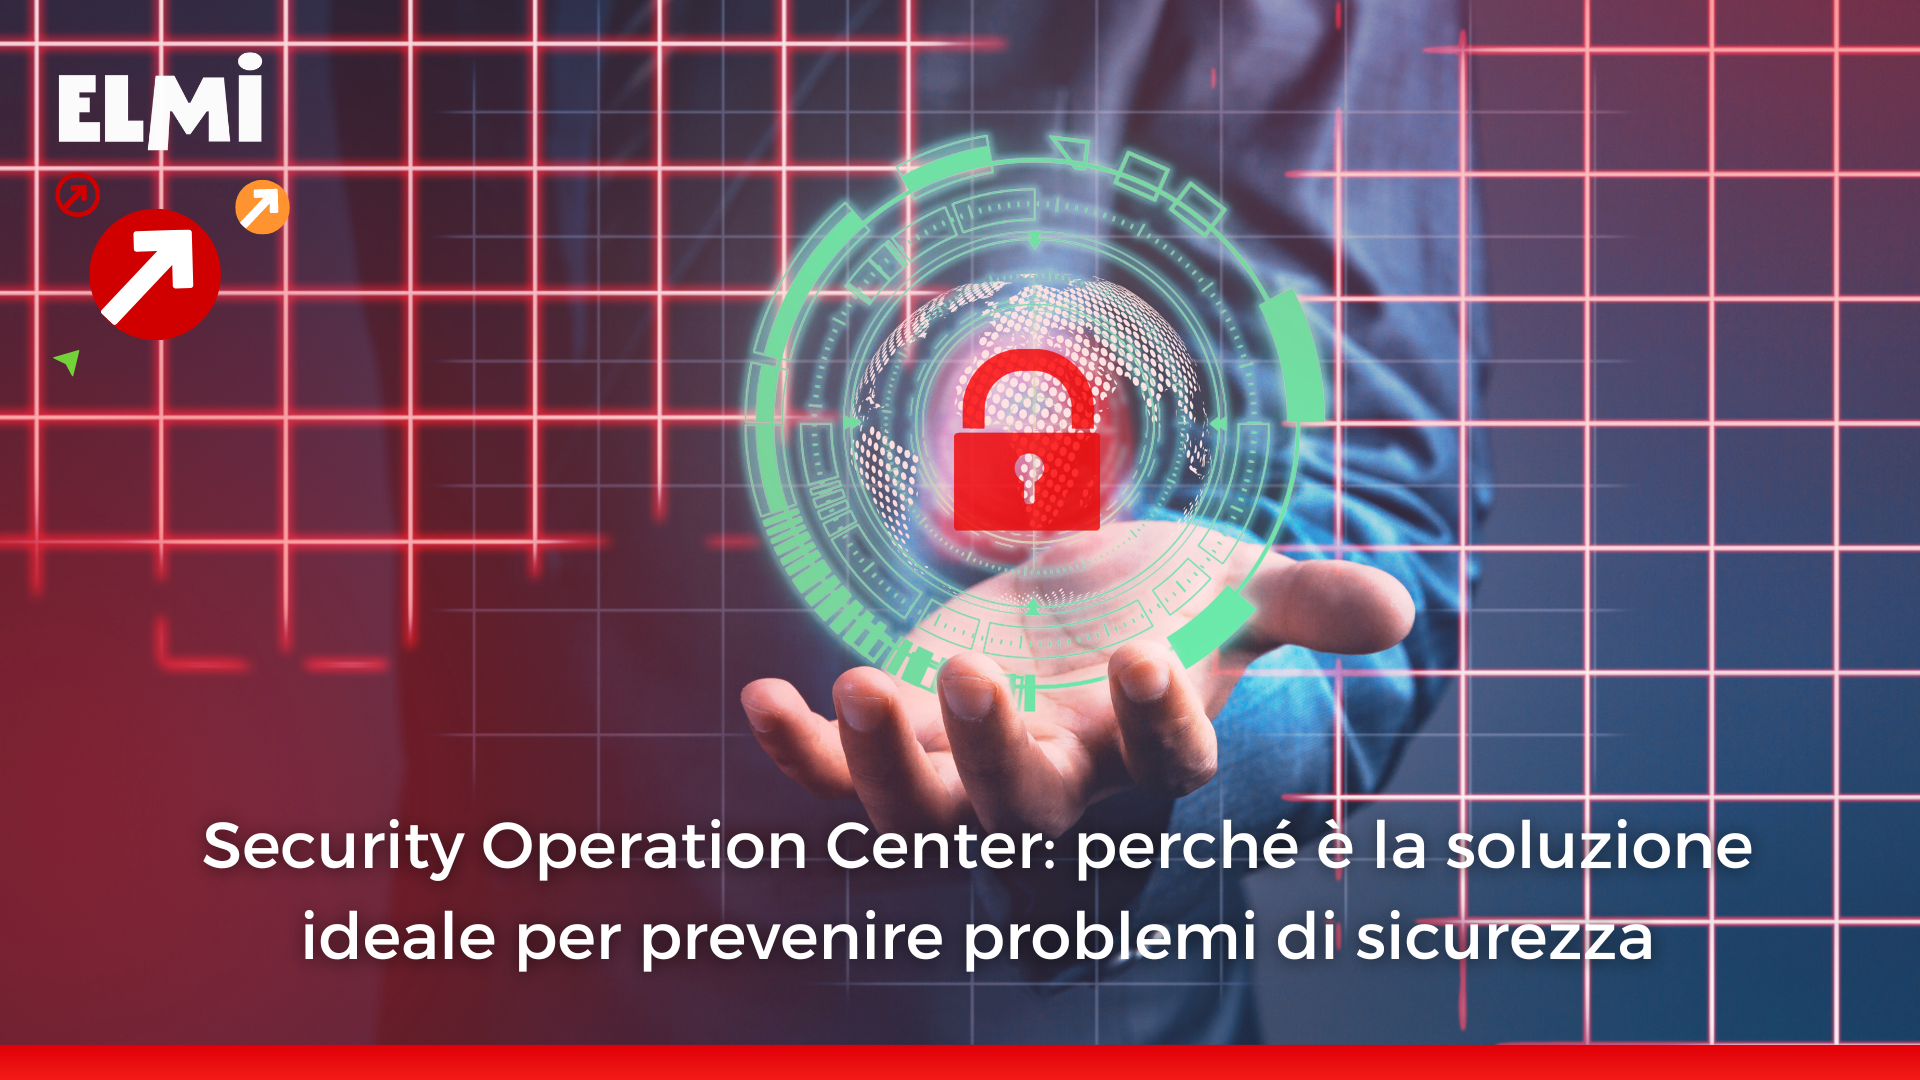 Security Operation Center: perché è la soluzione ideale per prevenire problemi di sicurezza